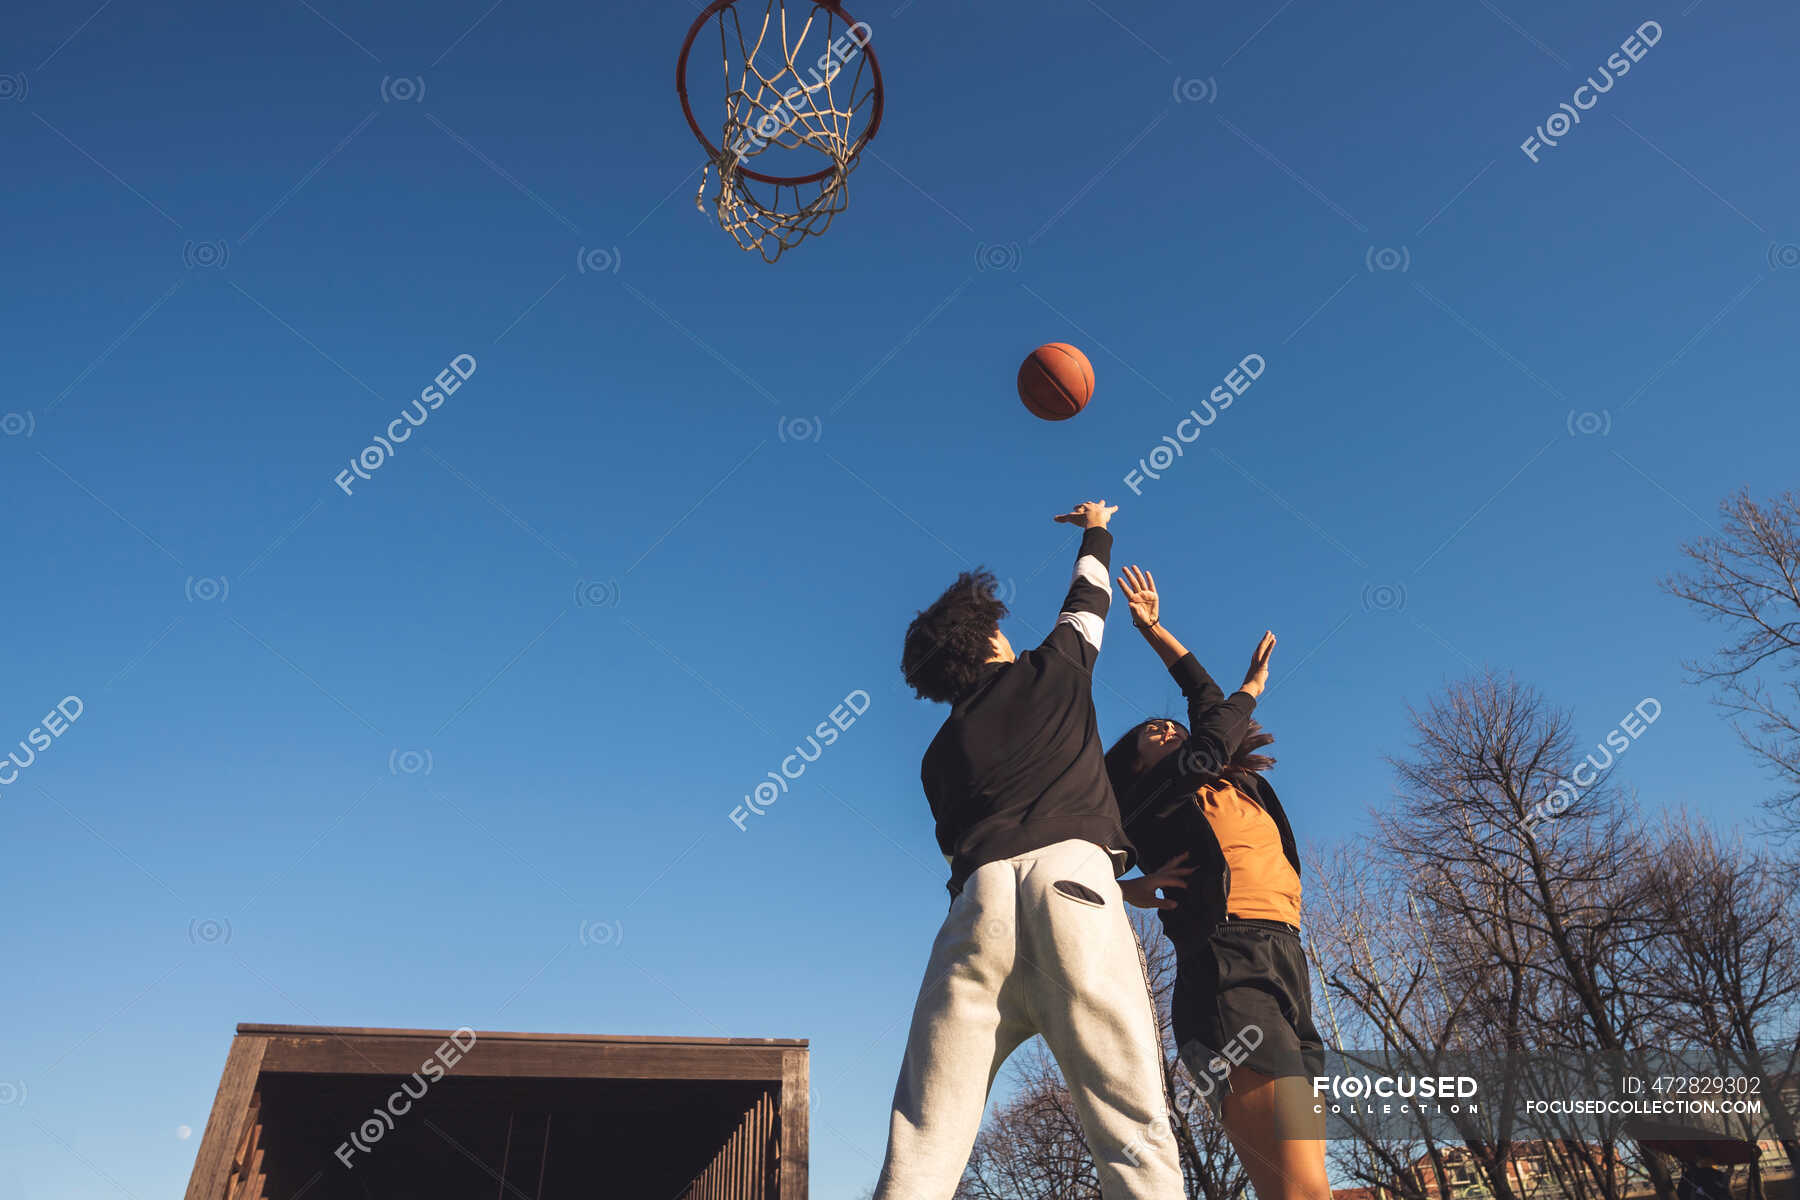 Jovem e mulher jogando basquete na quadra — Duas pessoas